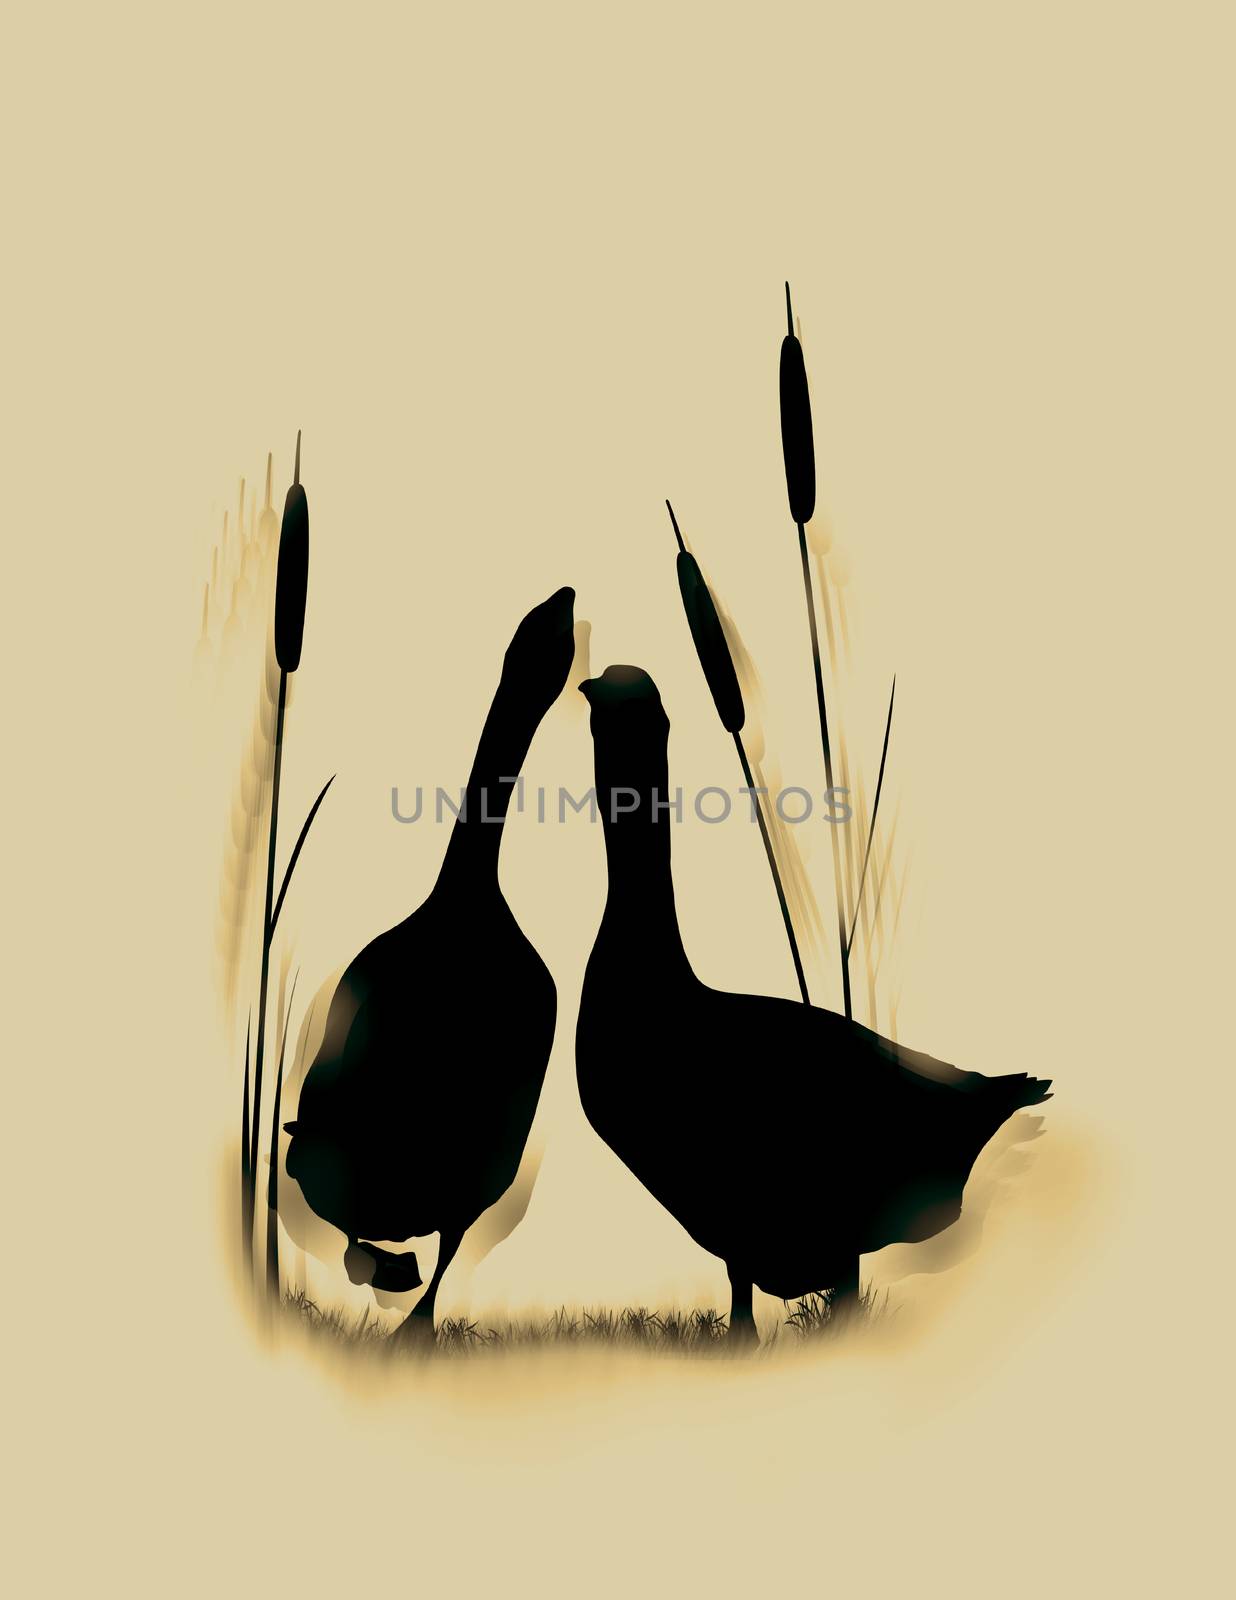 Romantic wildlife background with wild gooses couple